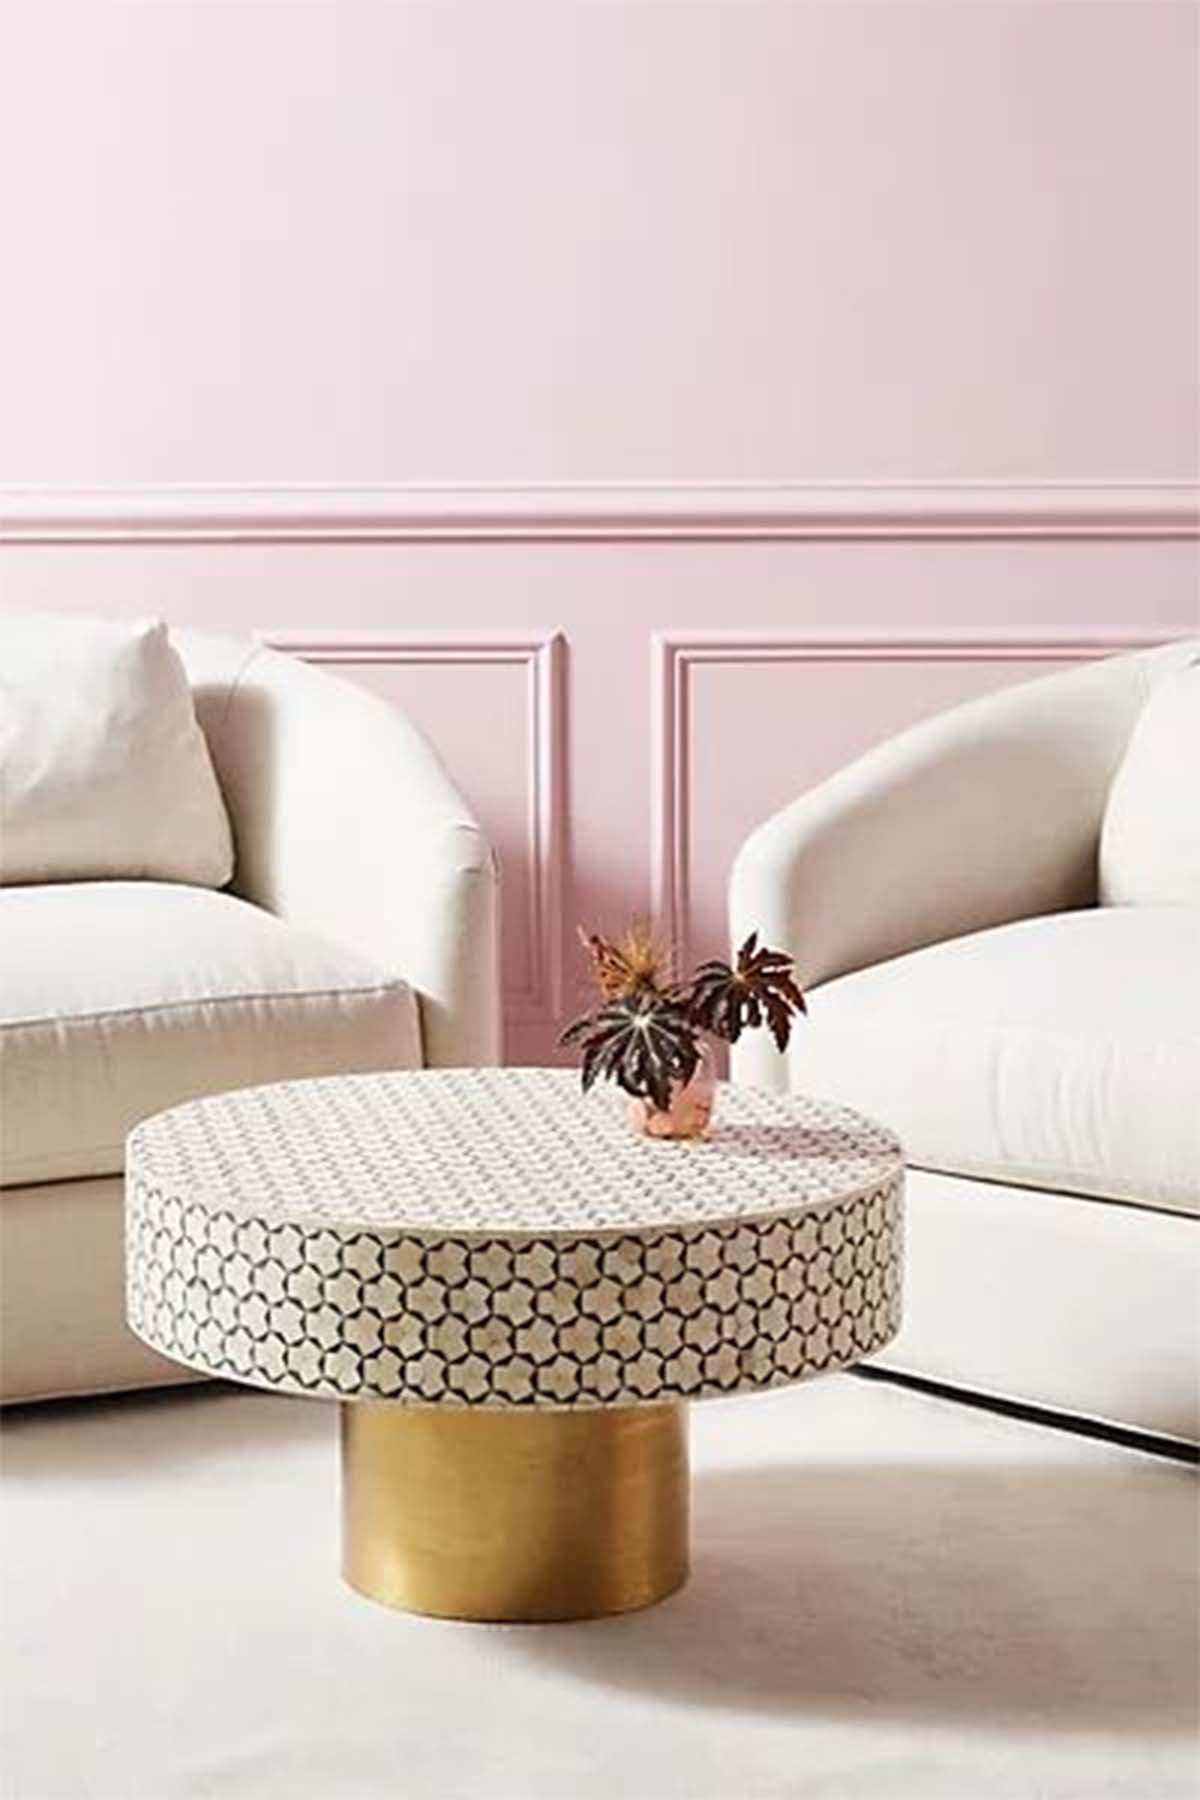 میز جلو مبلی دایره ای با طرح و پترن هندسی سفید مشکی و پایه طلایی